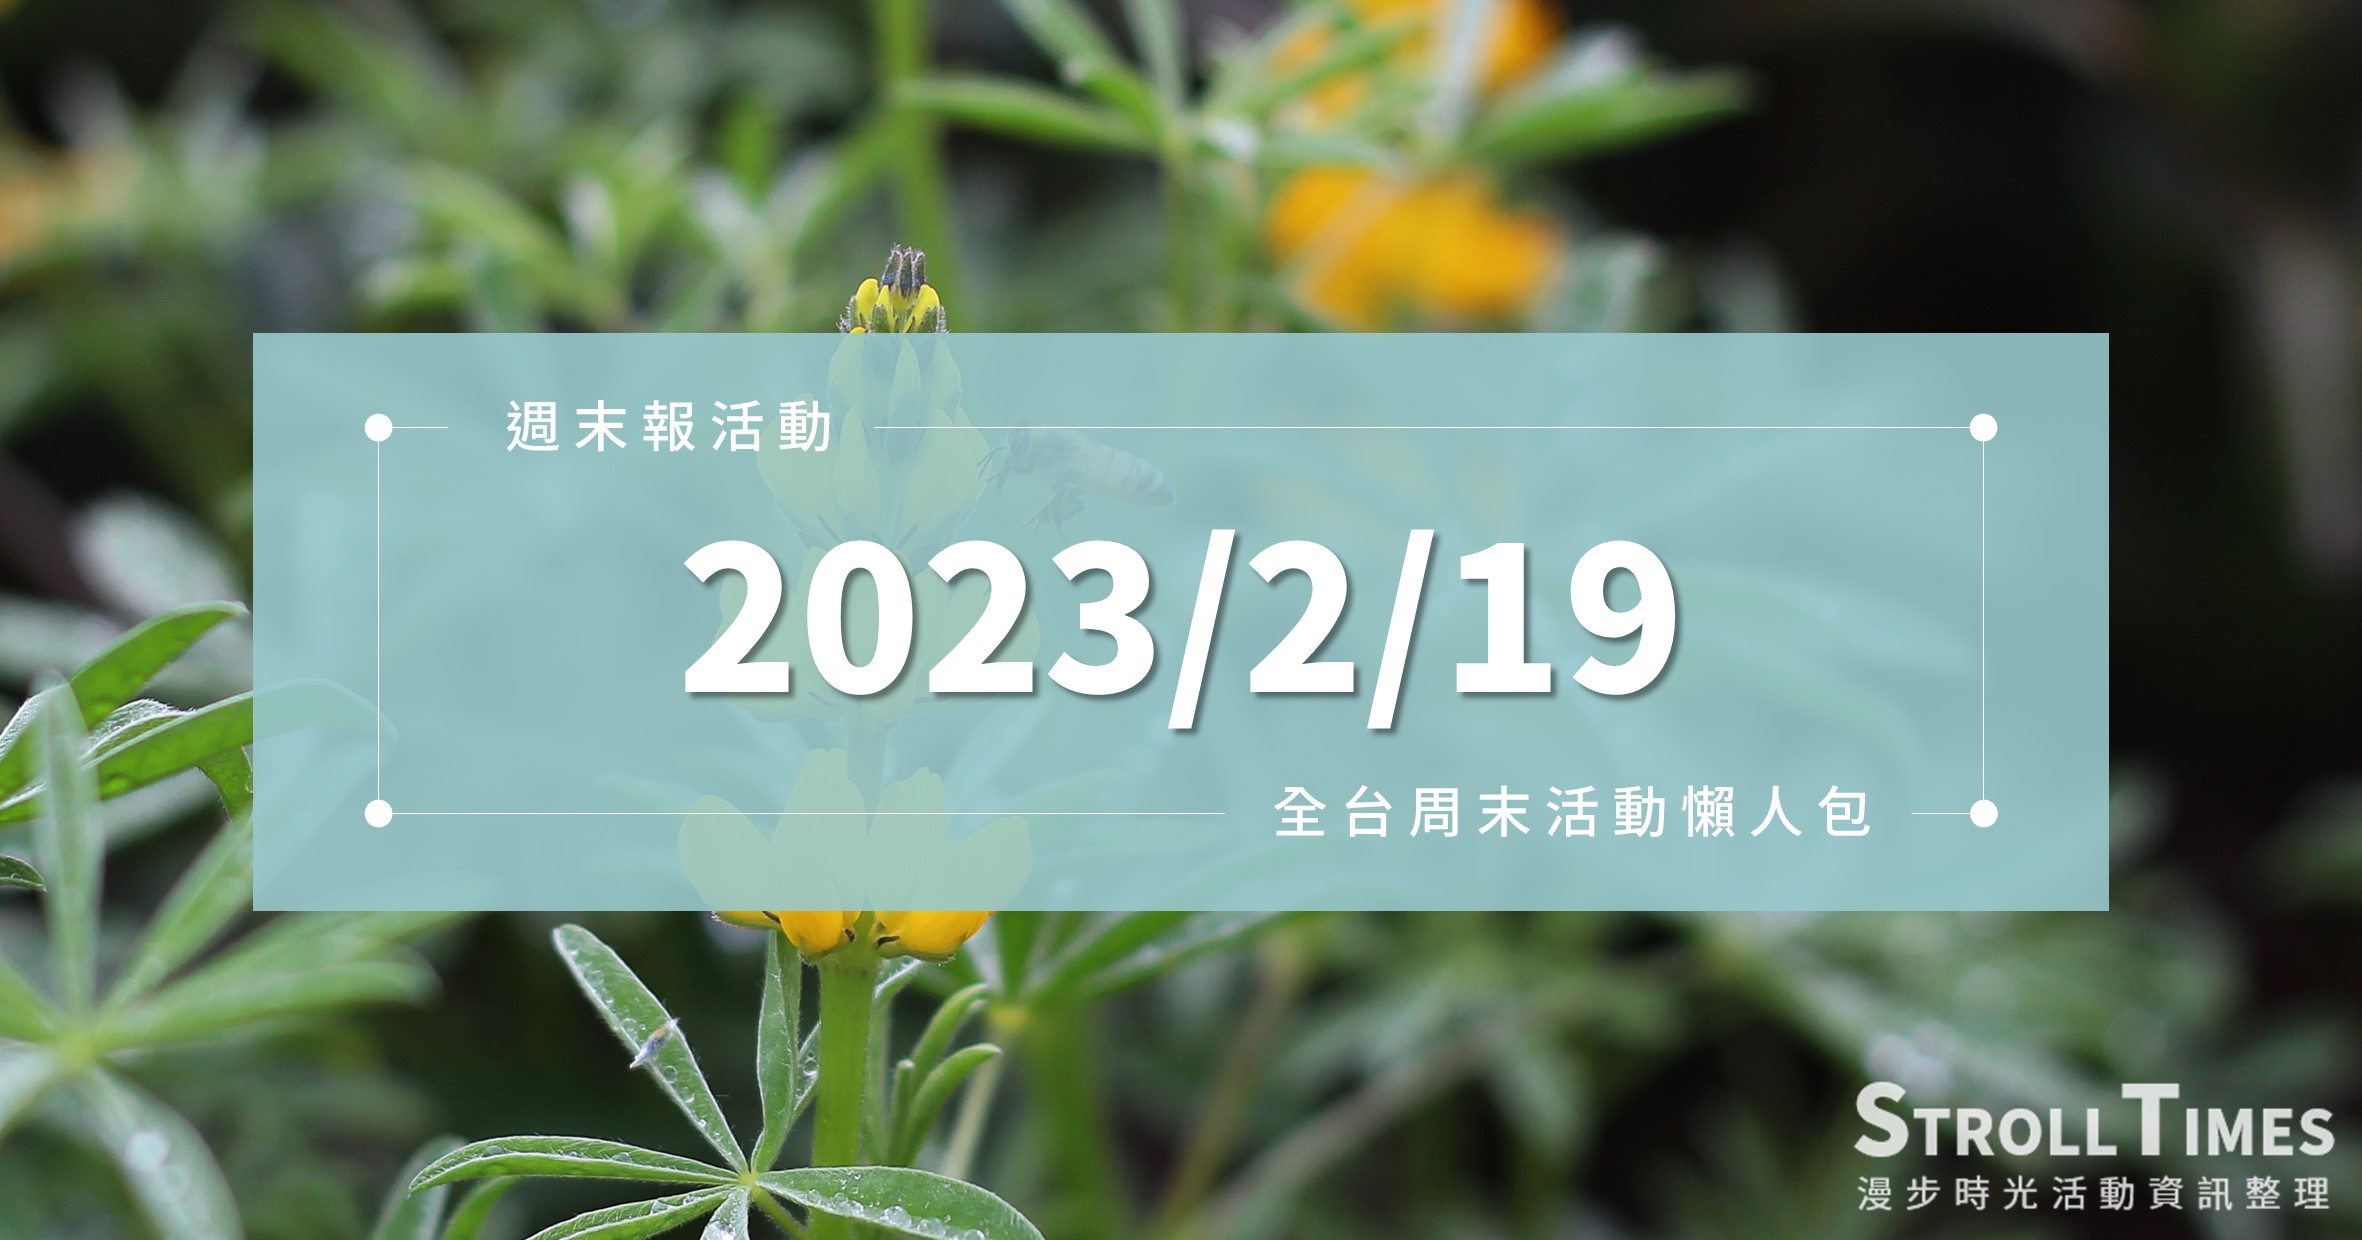 週末活動》全台「2023/2/19」週日活動整理